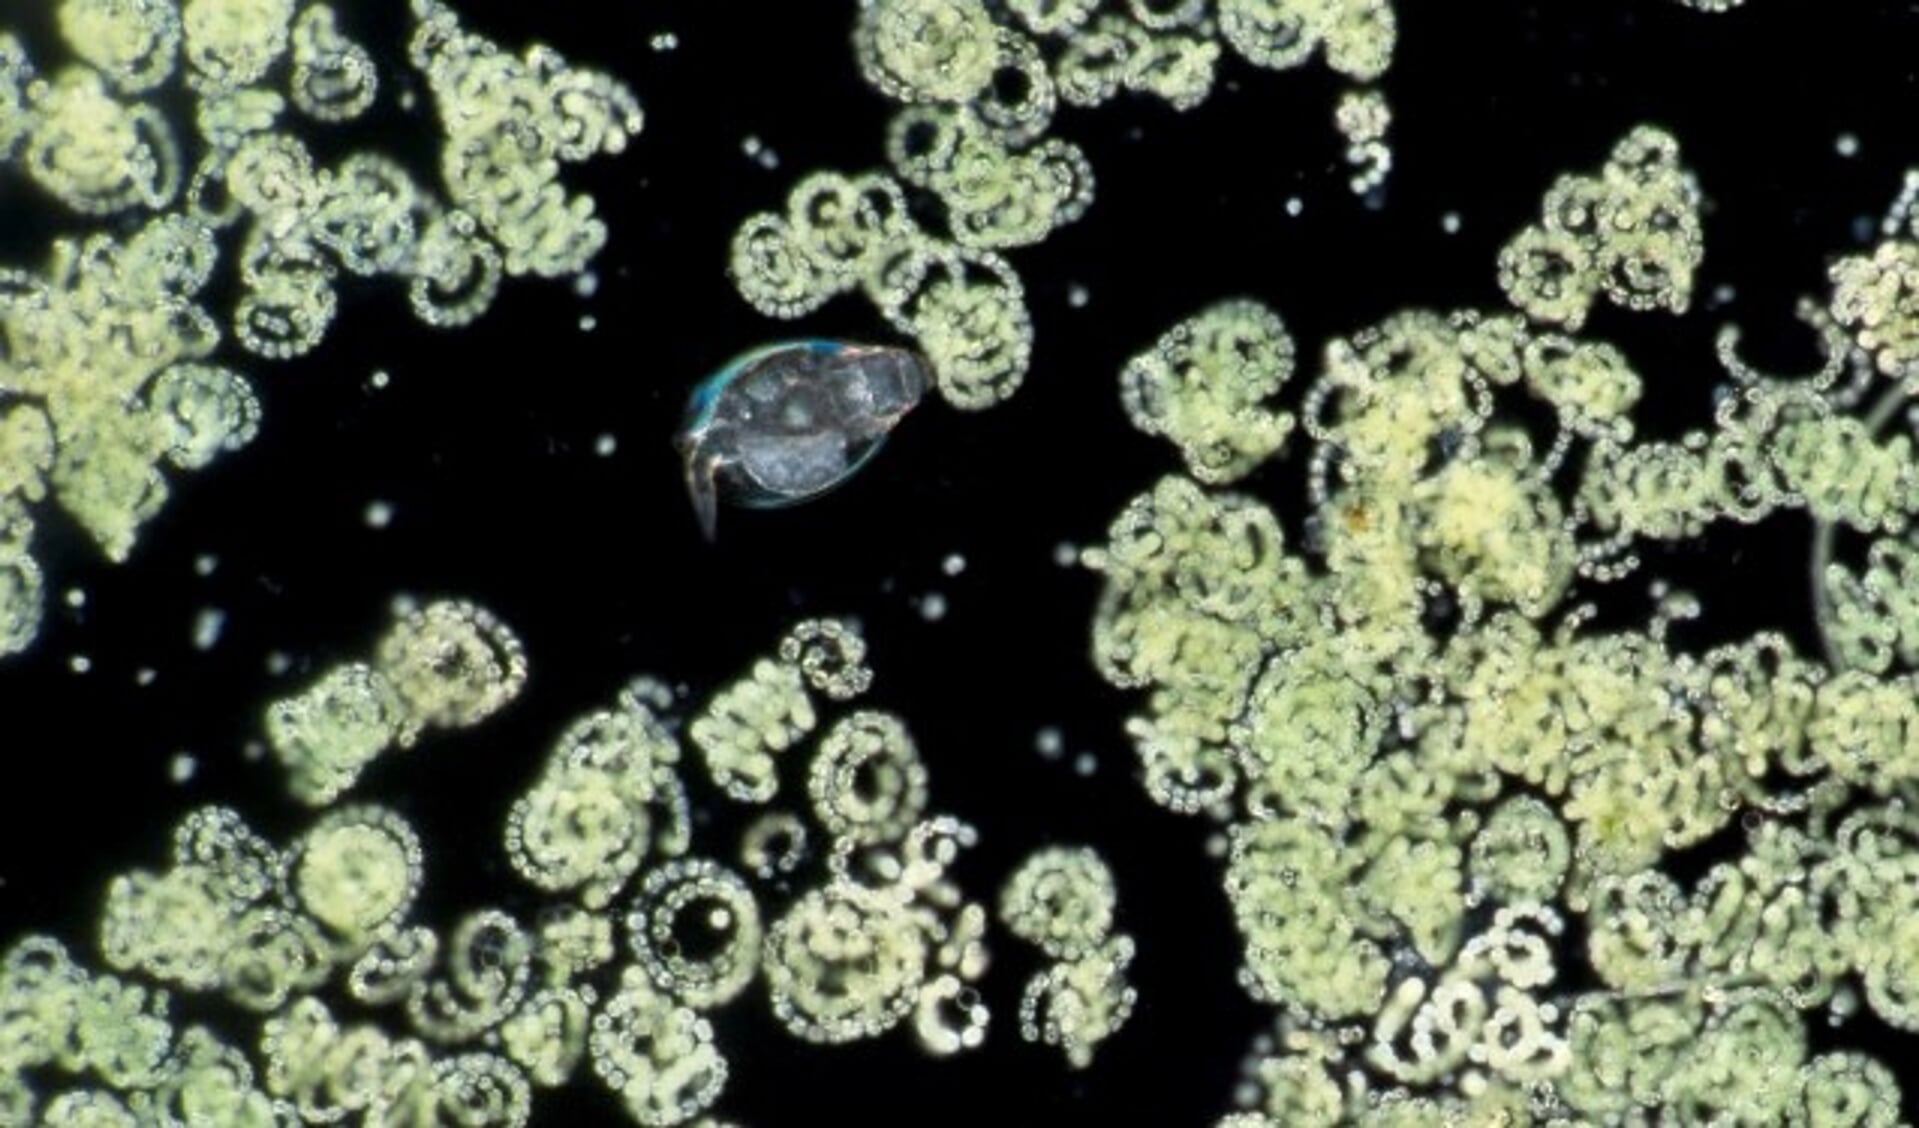 Kolonies blauwalgen en roeipootkreeftje uit de Berkelse plas. (Foto: Wim van Egmond)